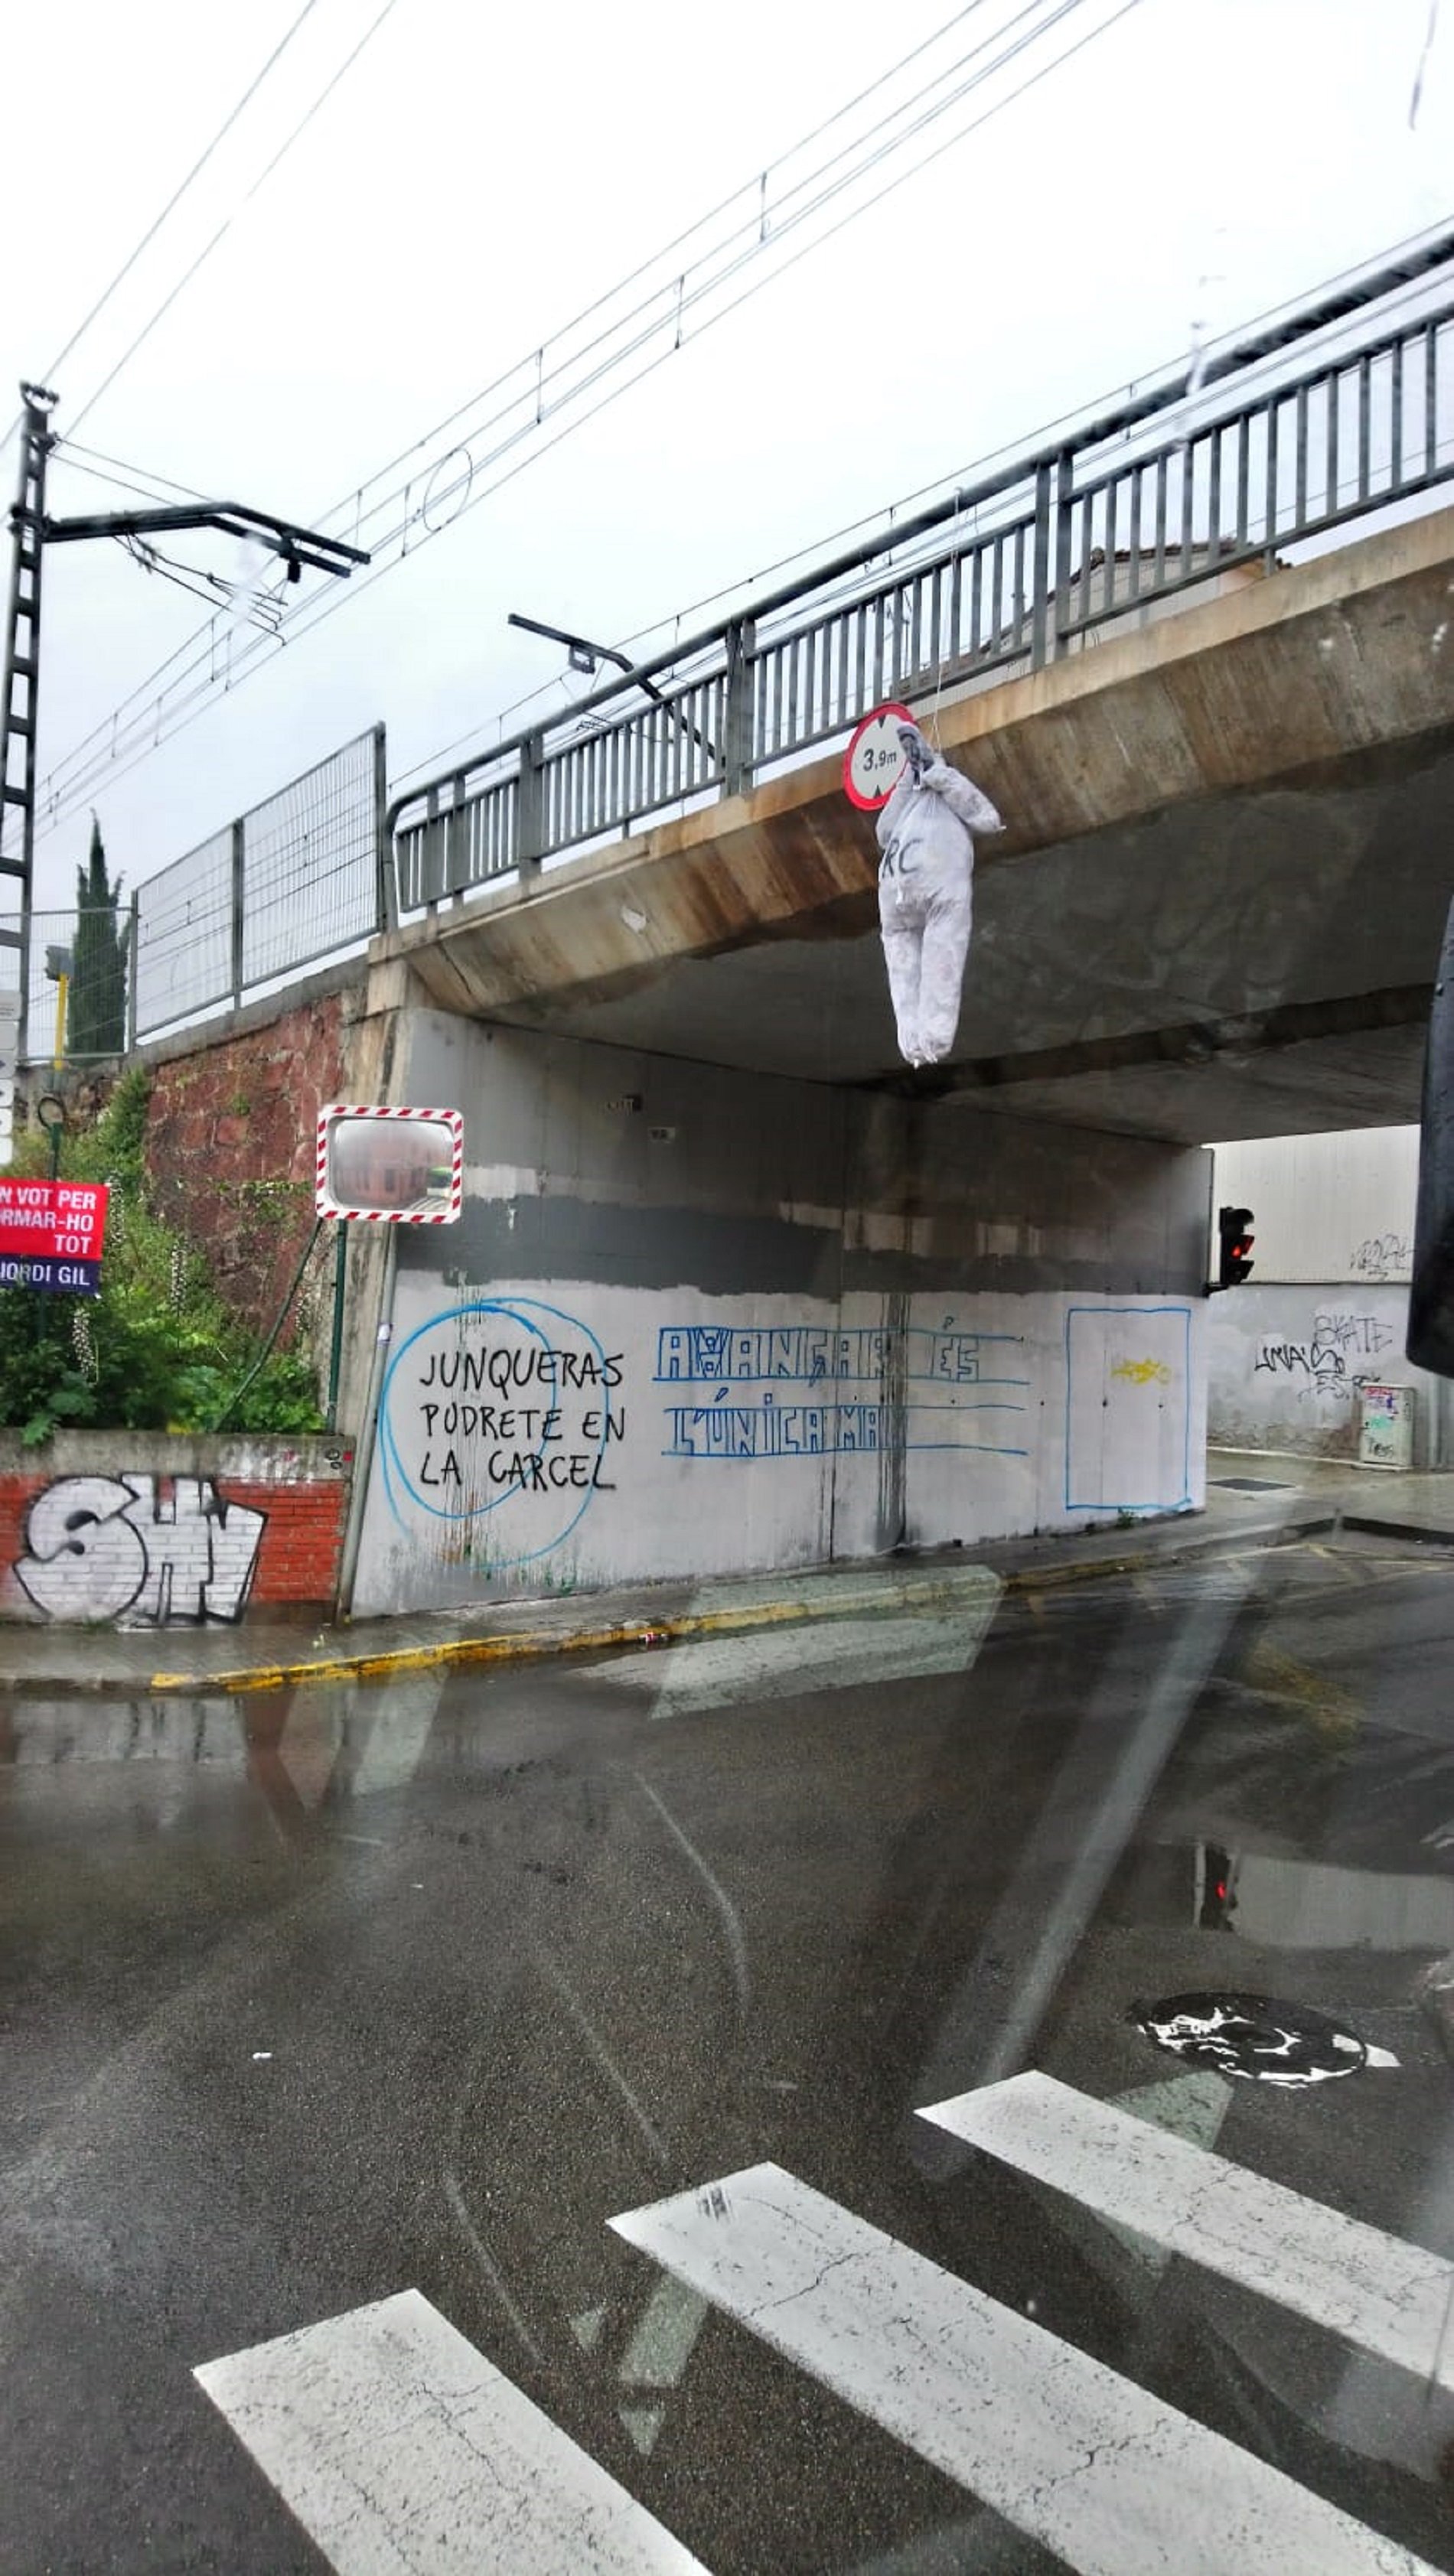 Aparece un muñeco con la cara de Junqueras colgado de un puente en Sant Vicenç dels Horts